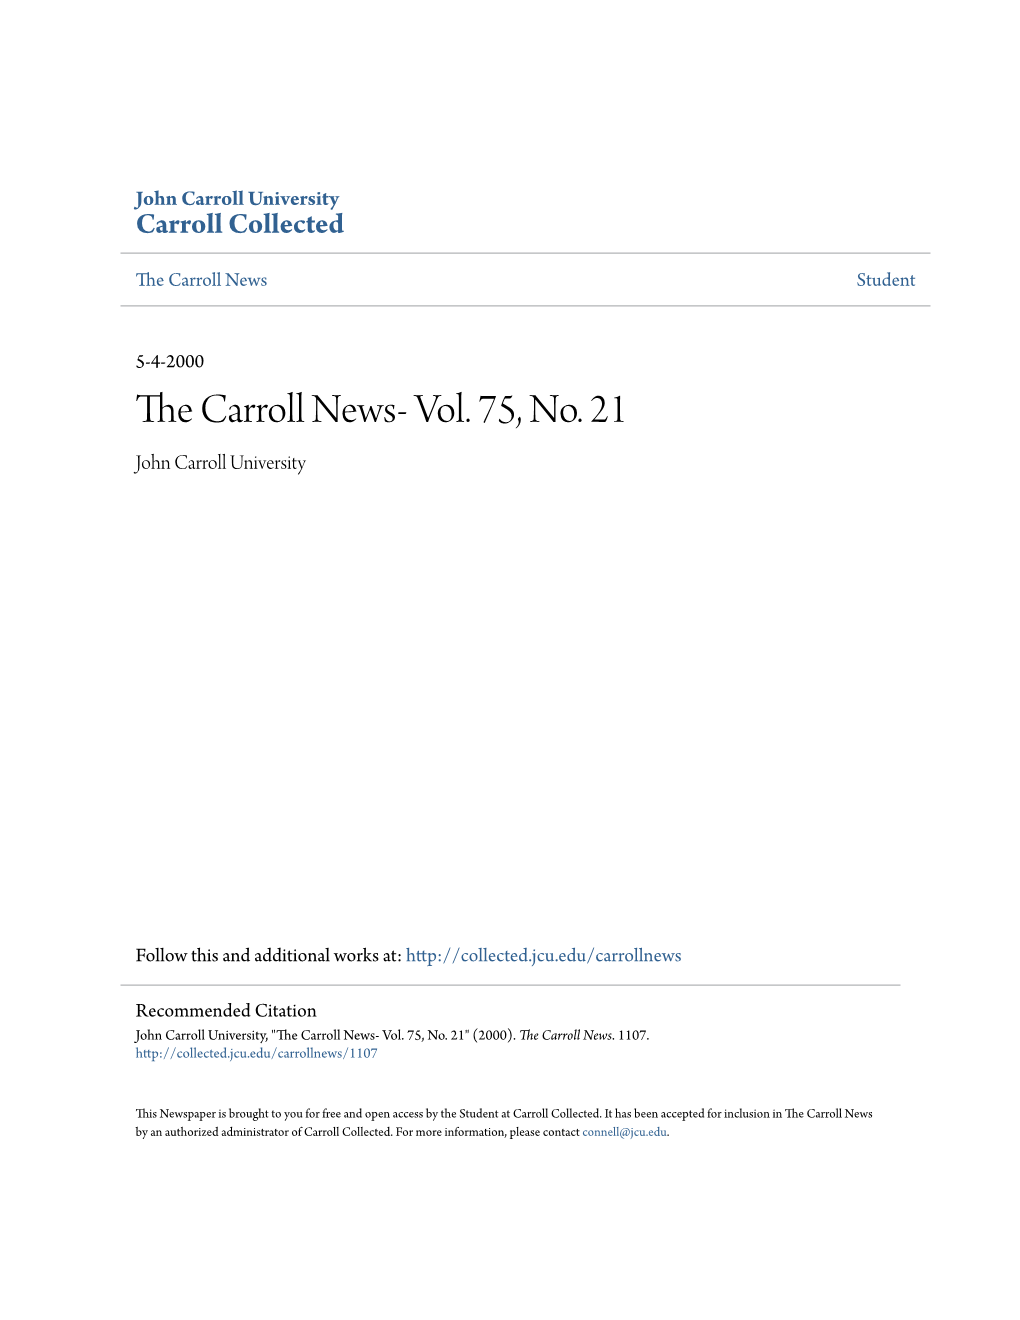 The Carroll News- Vol. 75, No. 21